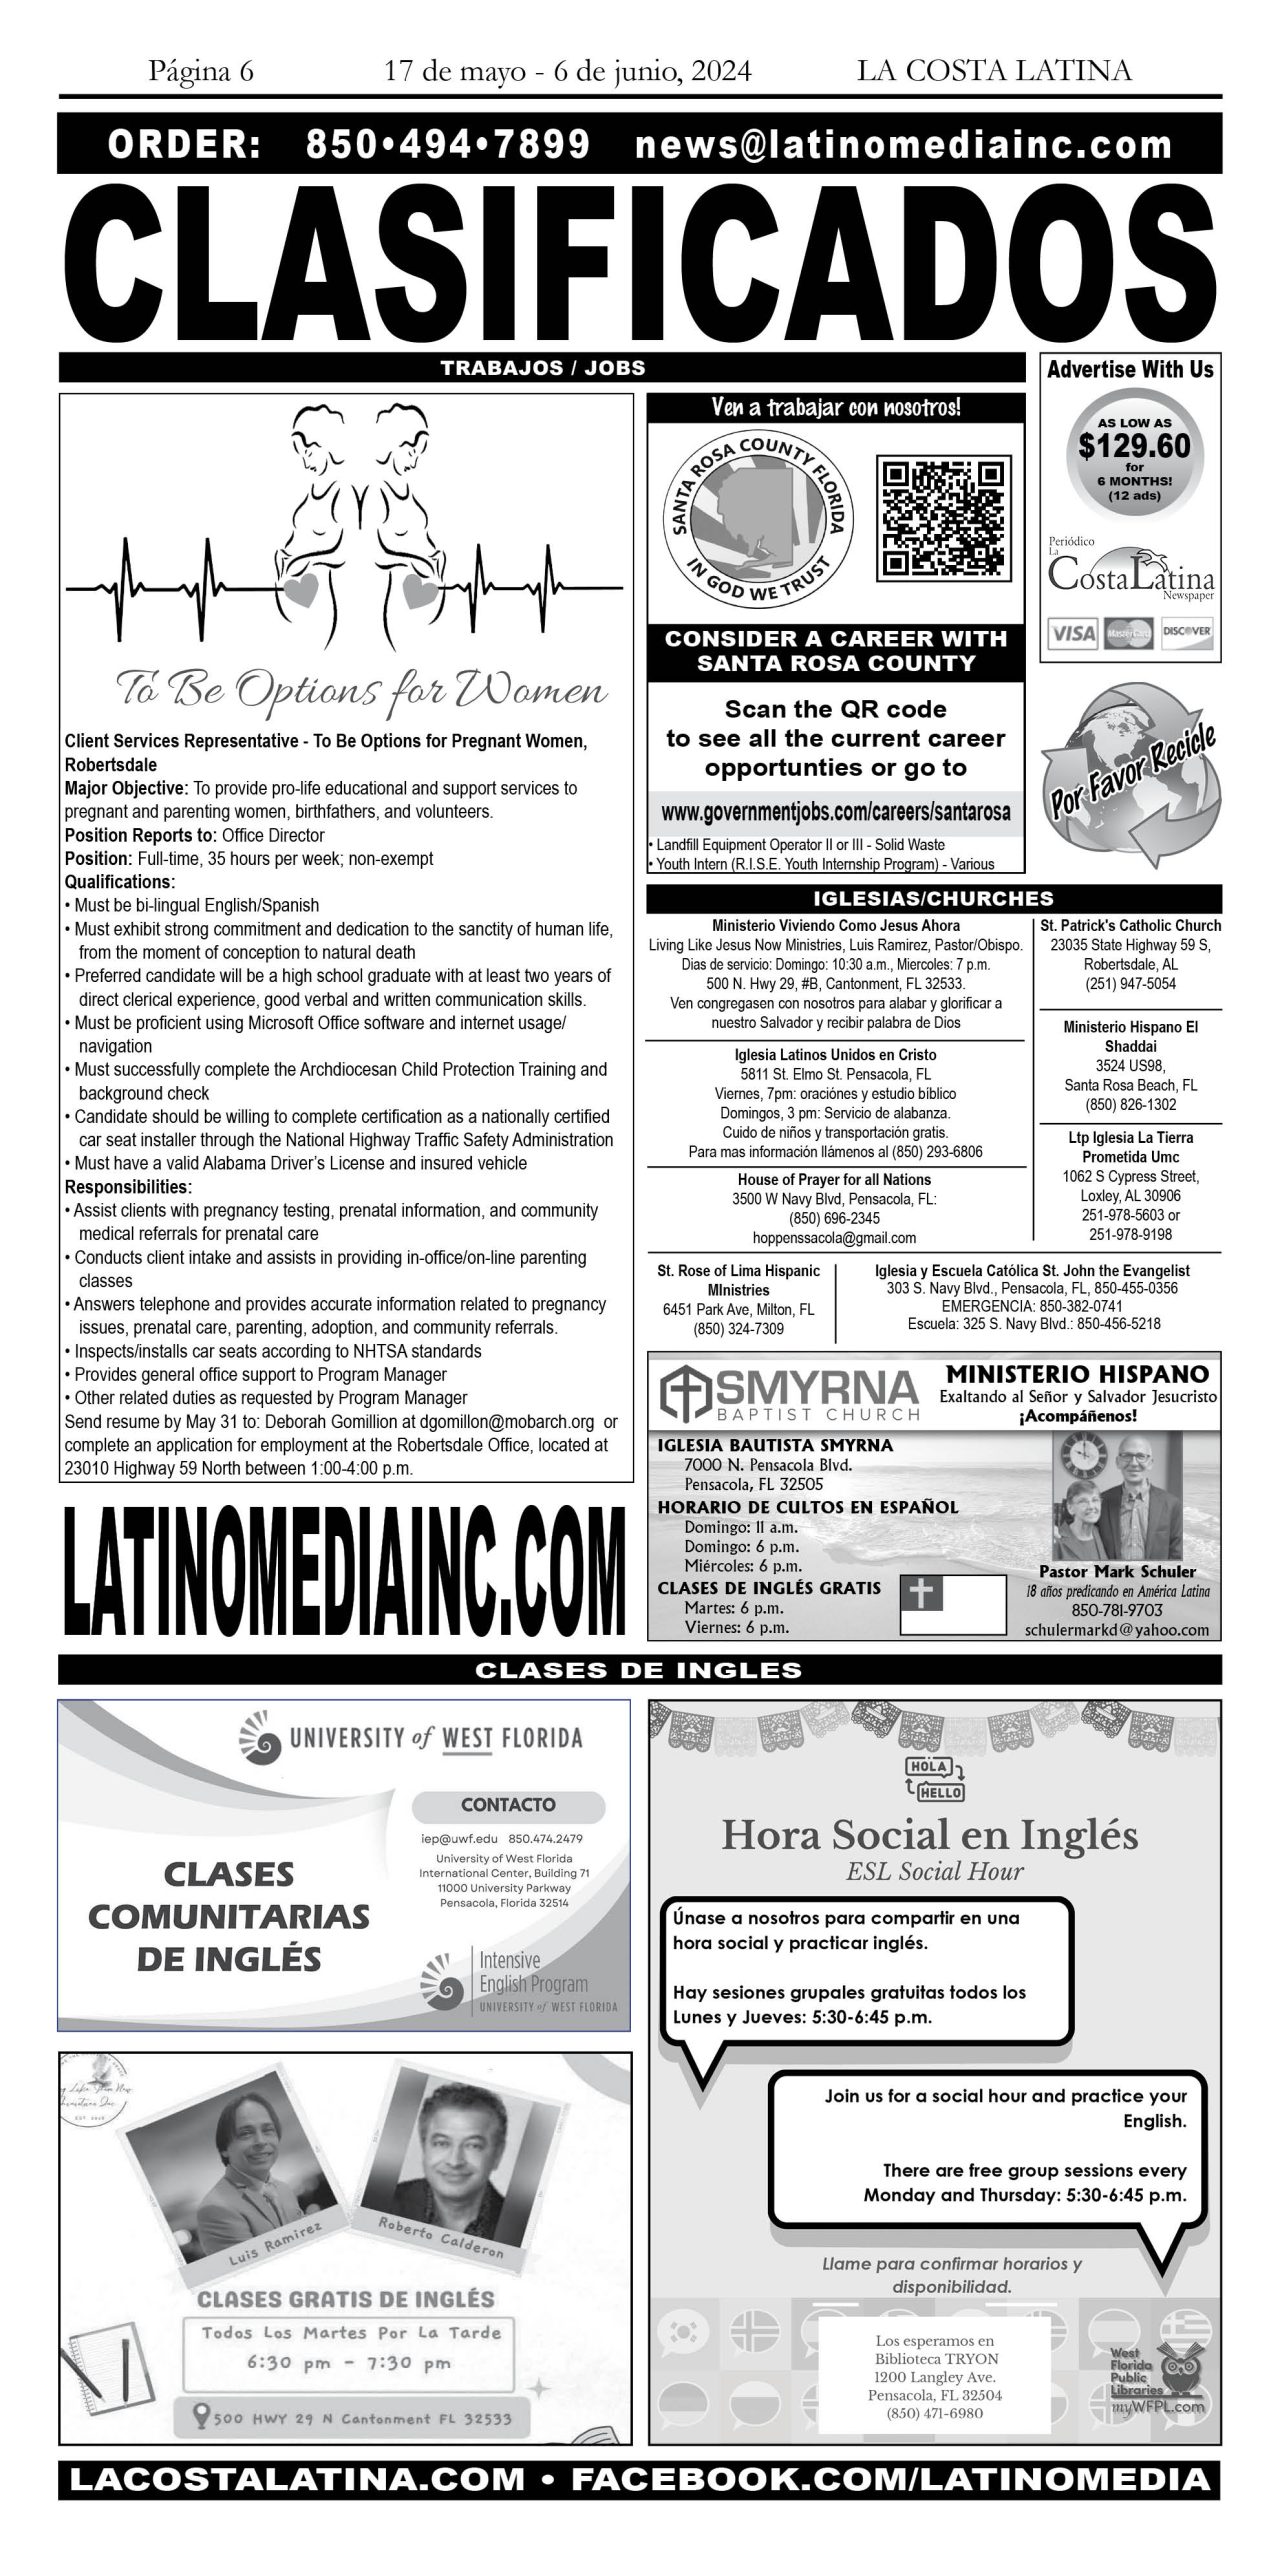 La Costa Latina May 17 - June 7, 2024 page 6